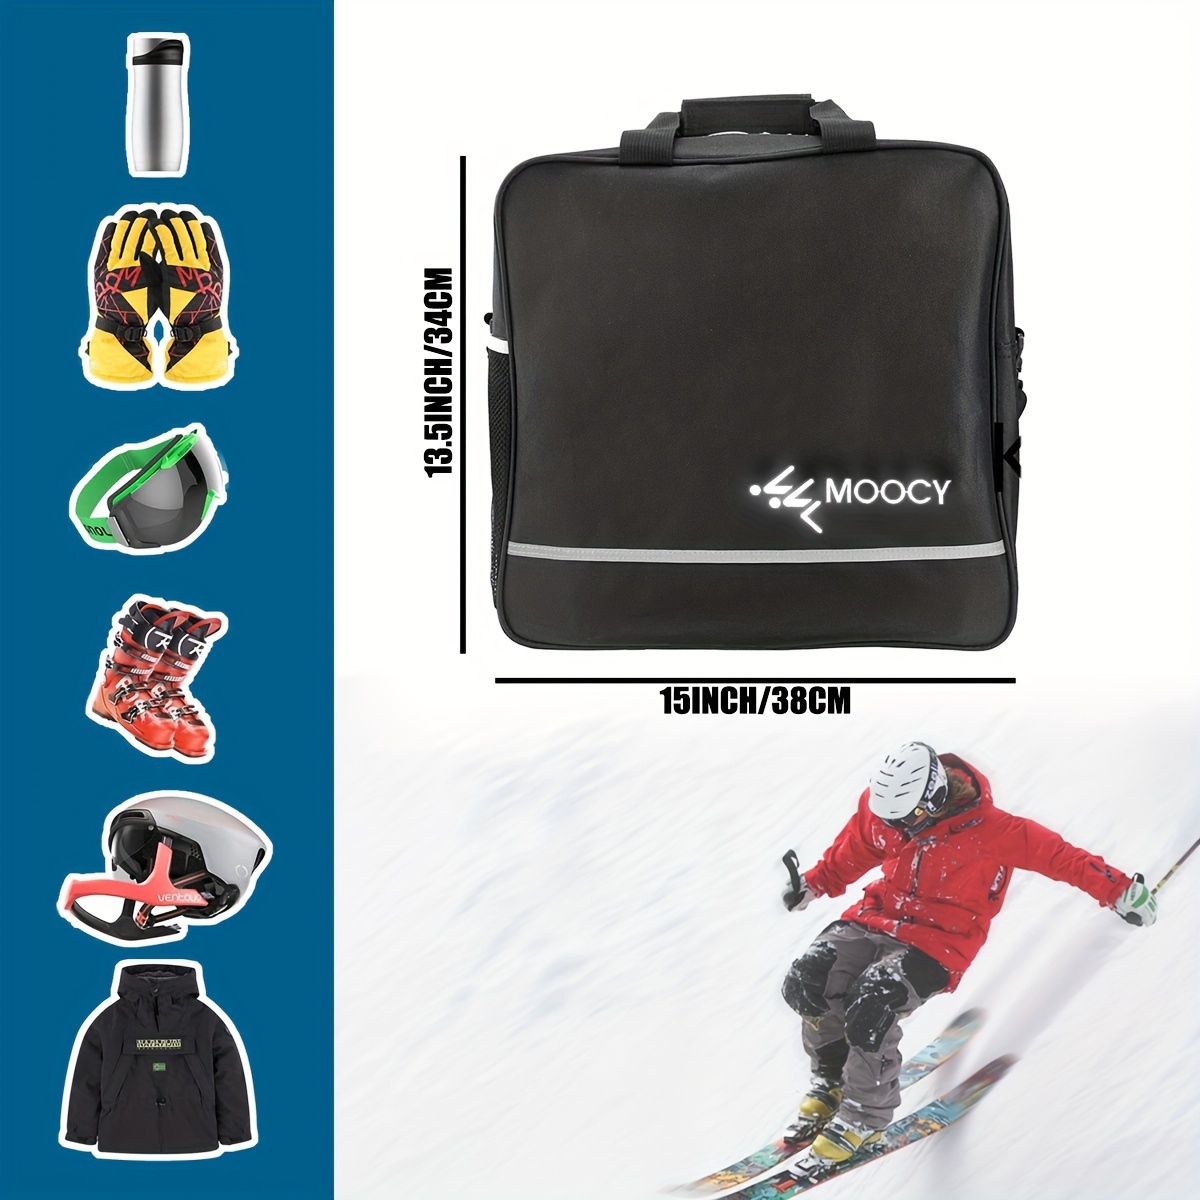 Ski Bag Ski Boot Bag Combo Snowboard Bag Ski Bag Air Travel - Temu